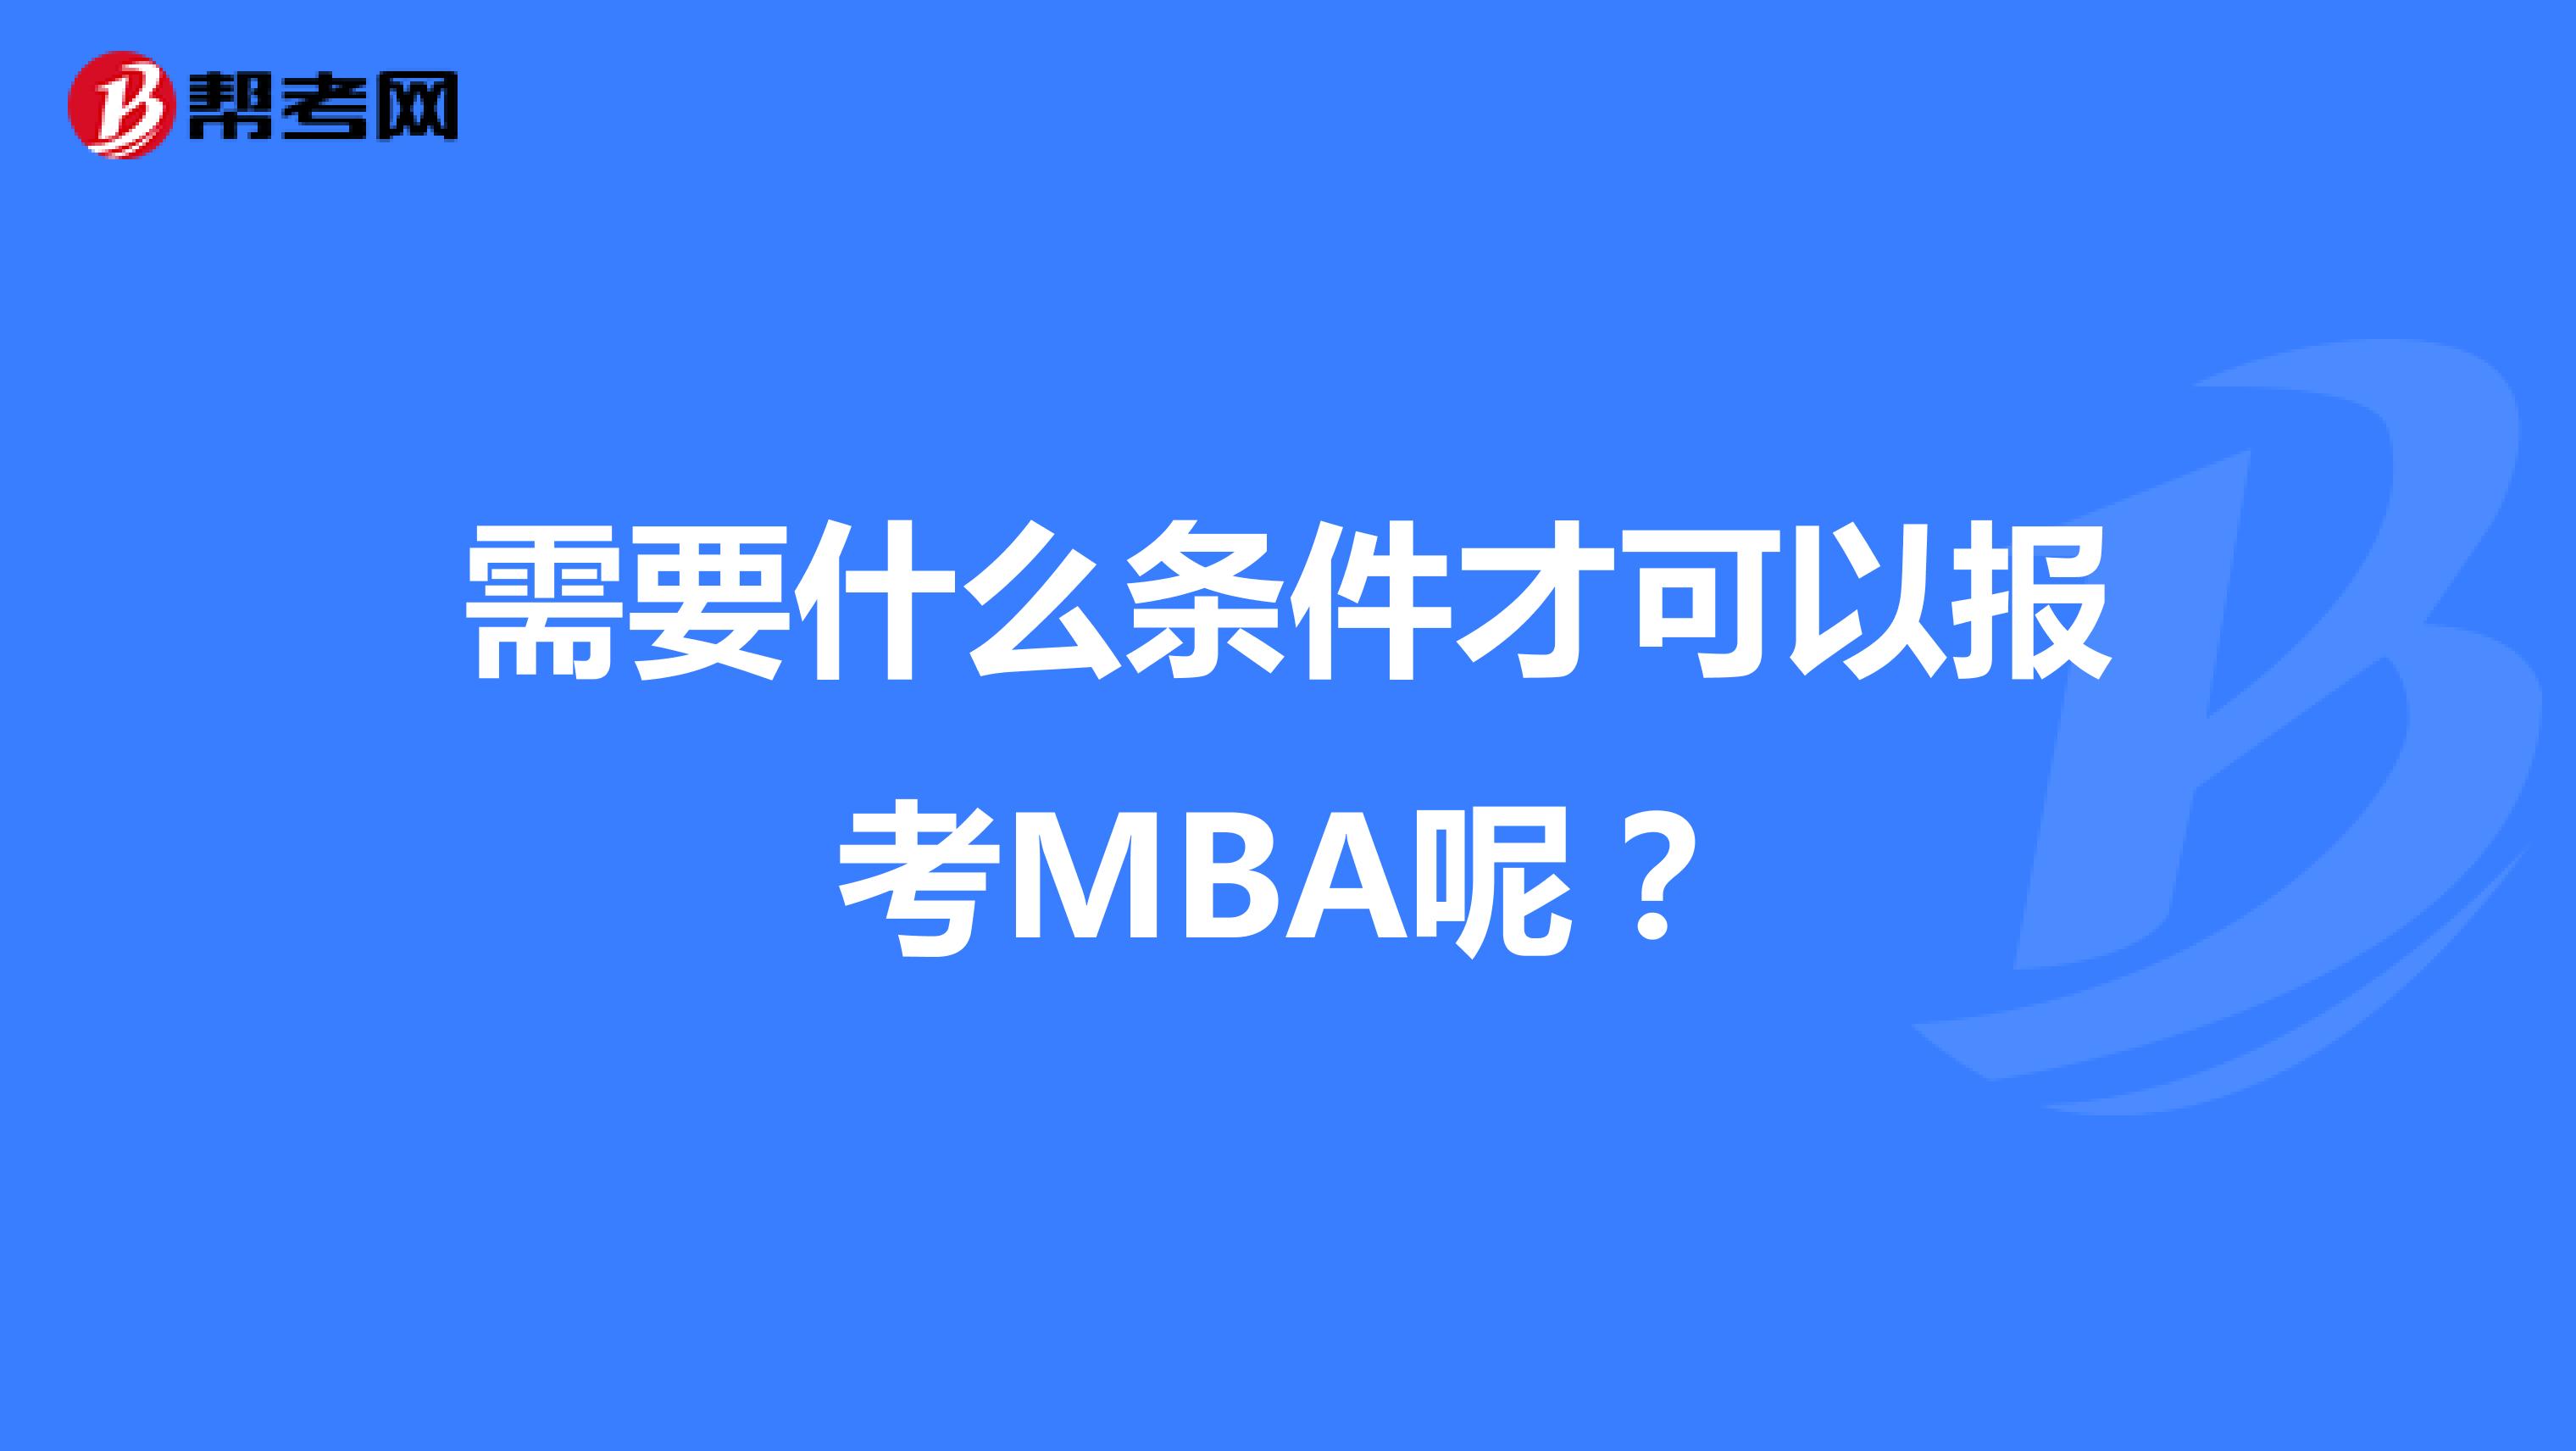 需要什么条件才可以报考MBA呢？